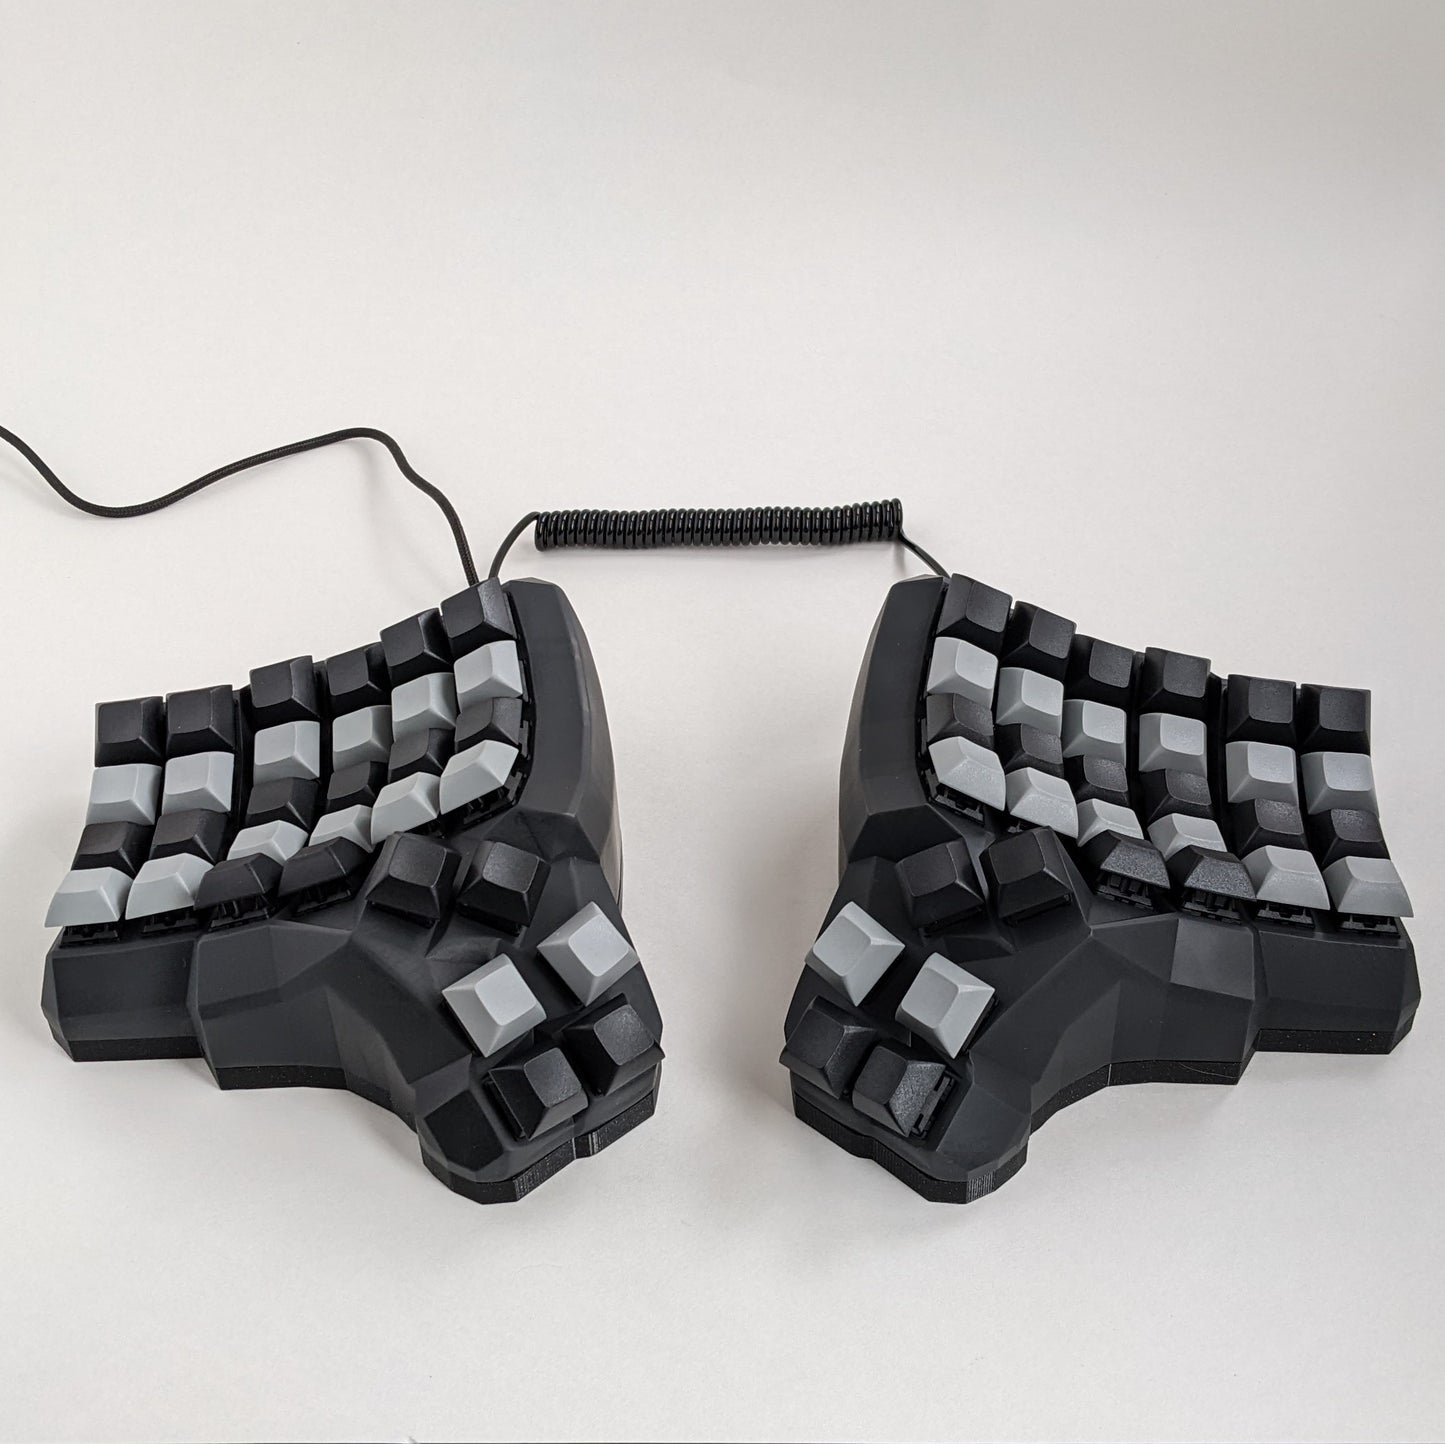 Dactyl Manuform Resin Keyboard